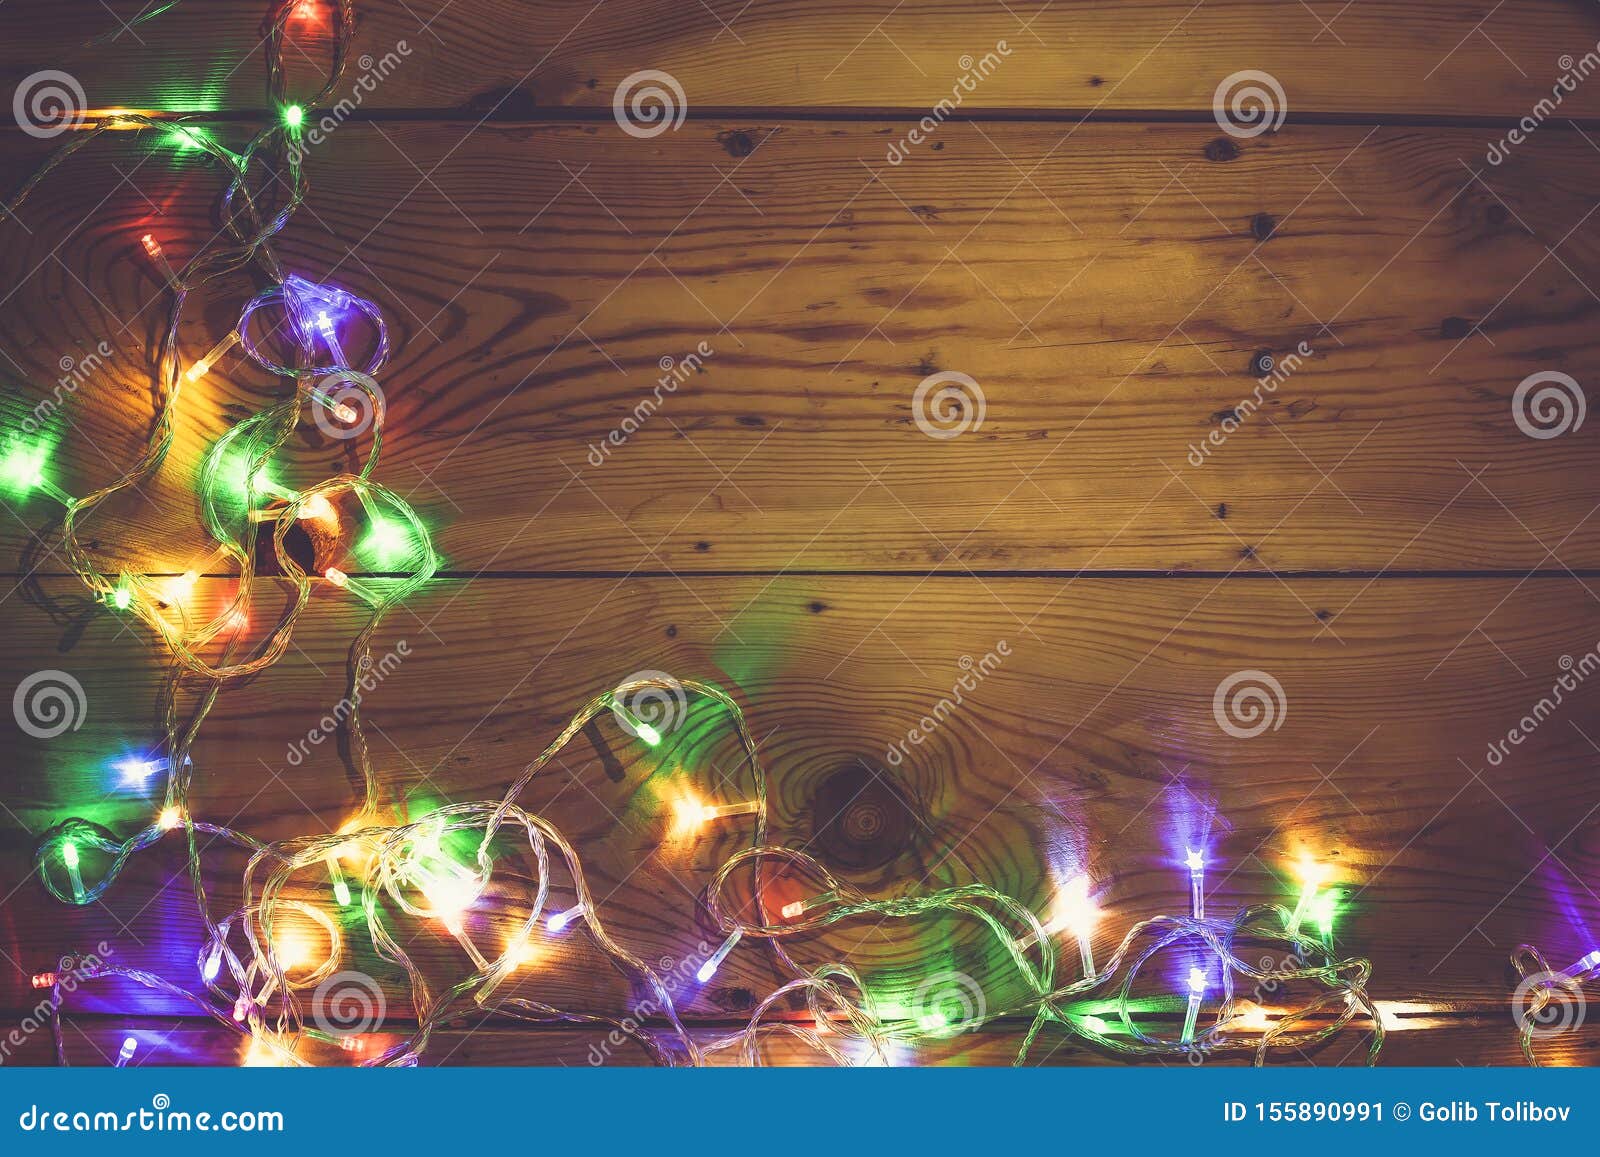 Christmas Decorative Lights. Christmas Garland Lights on Wood. Colorful ...